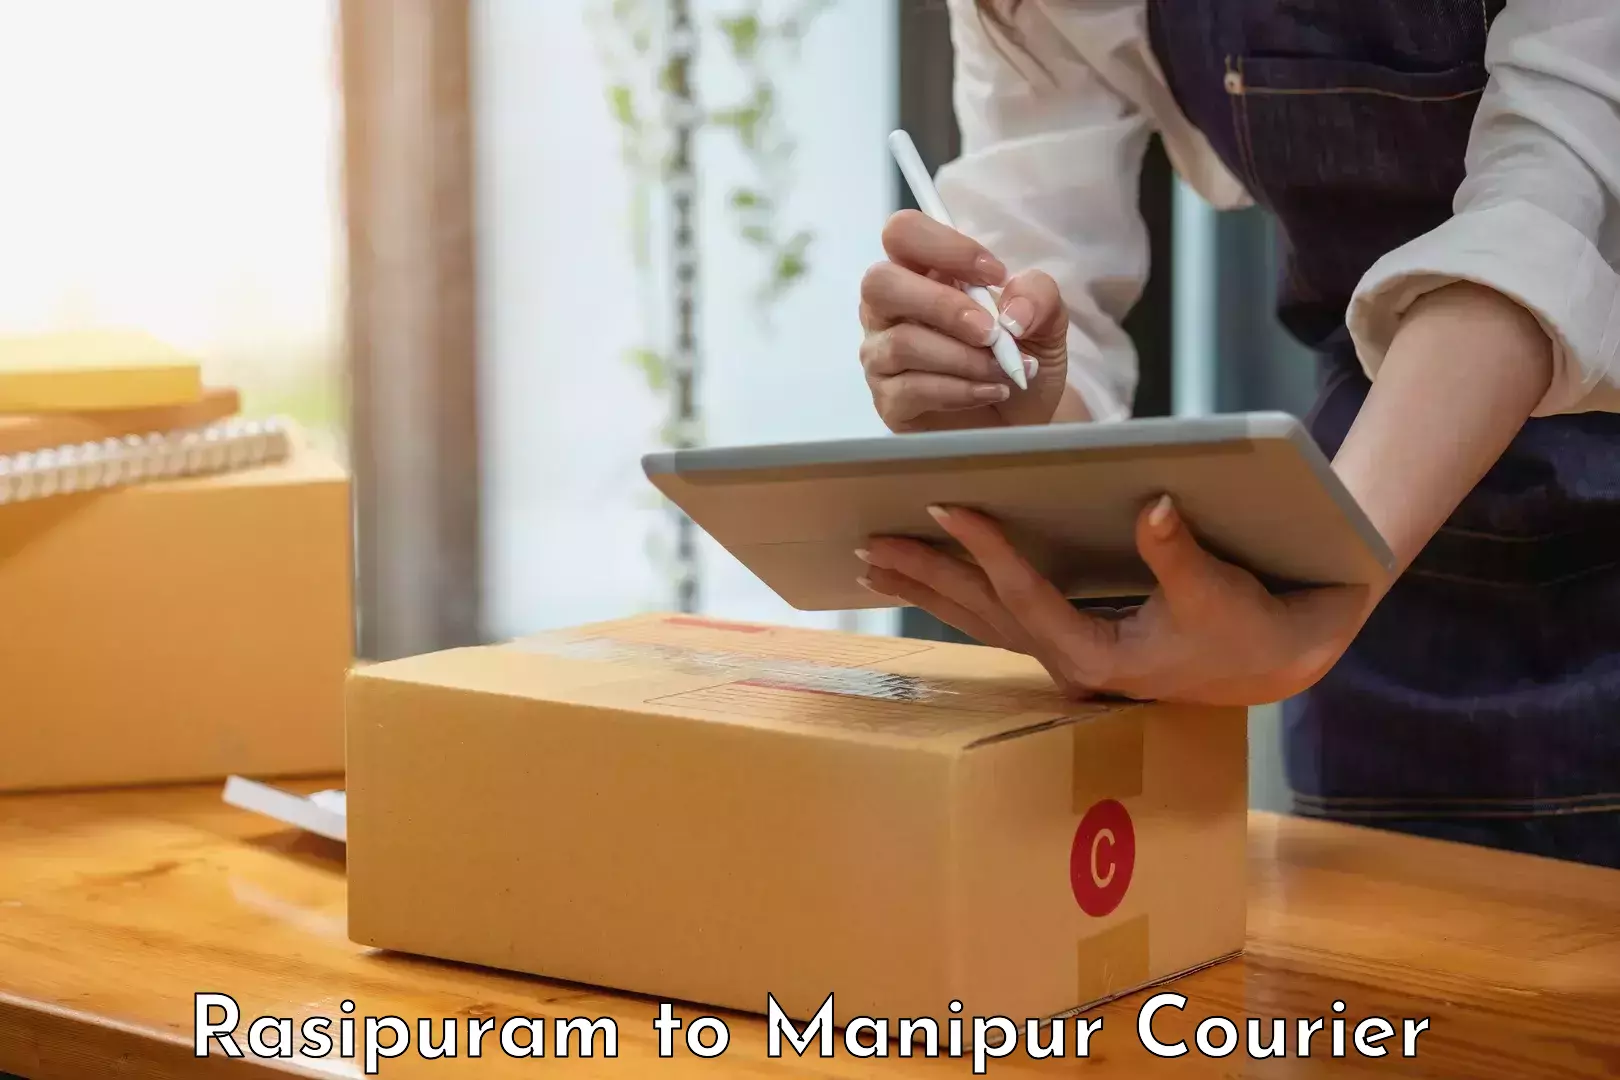 Full-service courier options in Rasipuram to Chandel